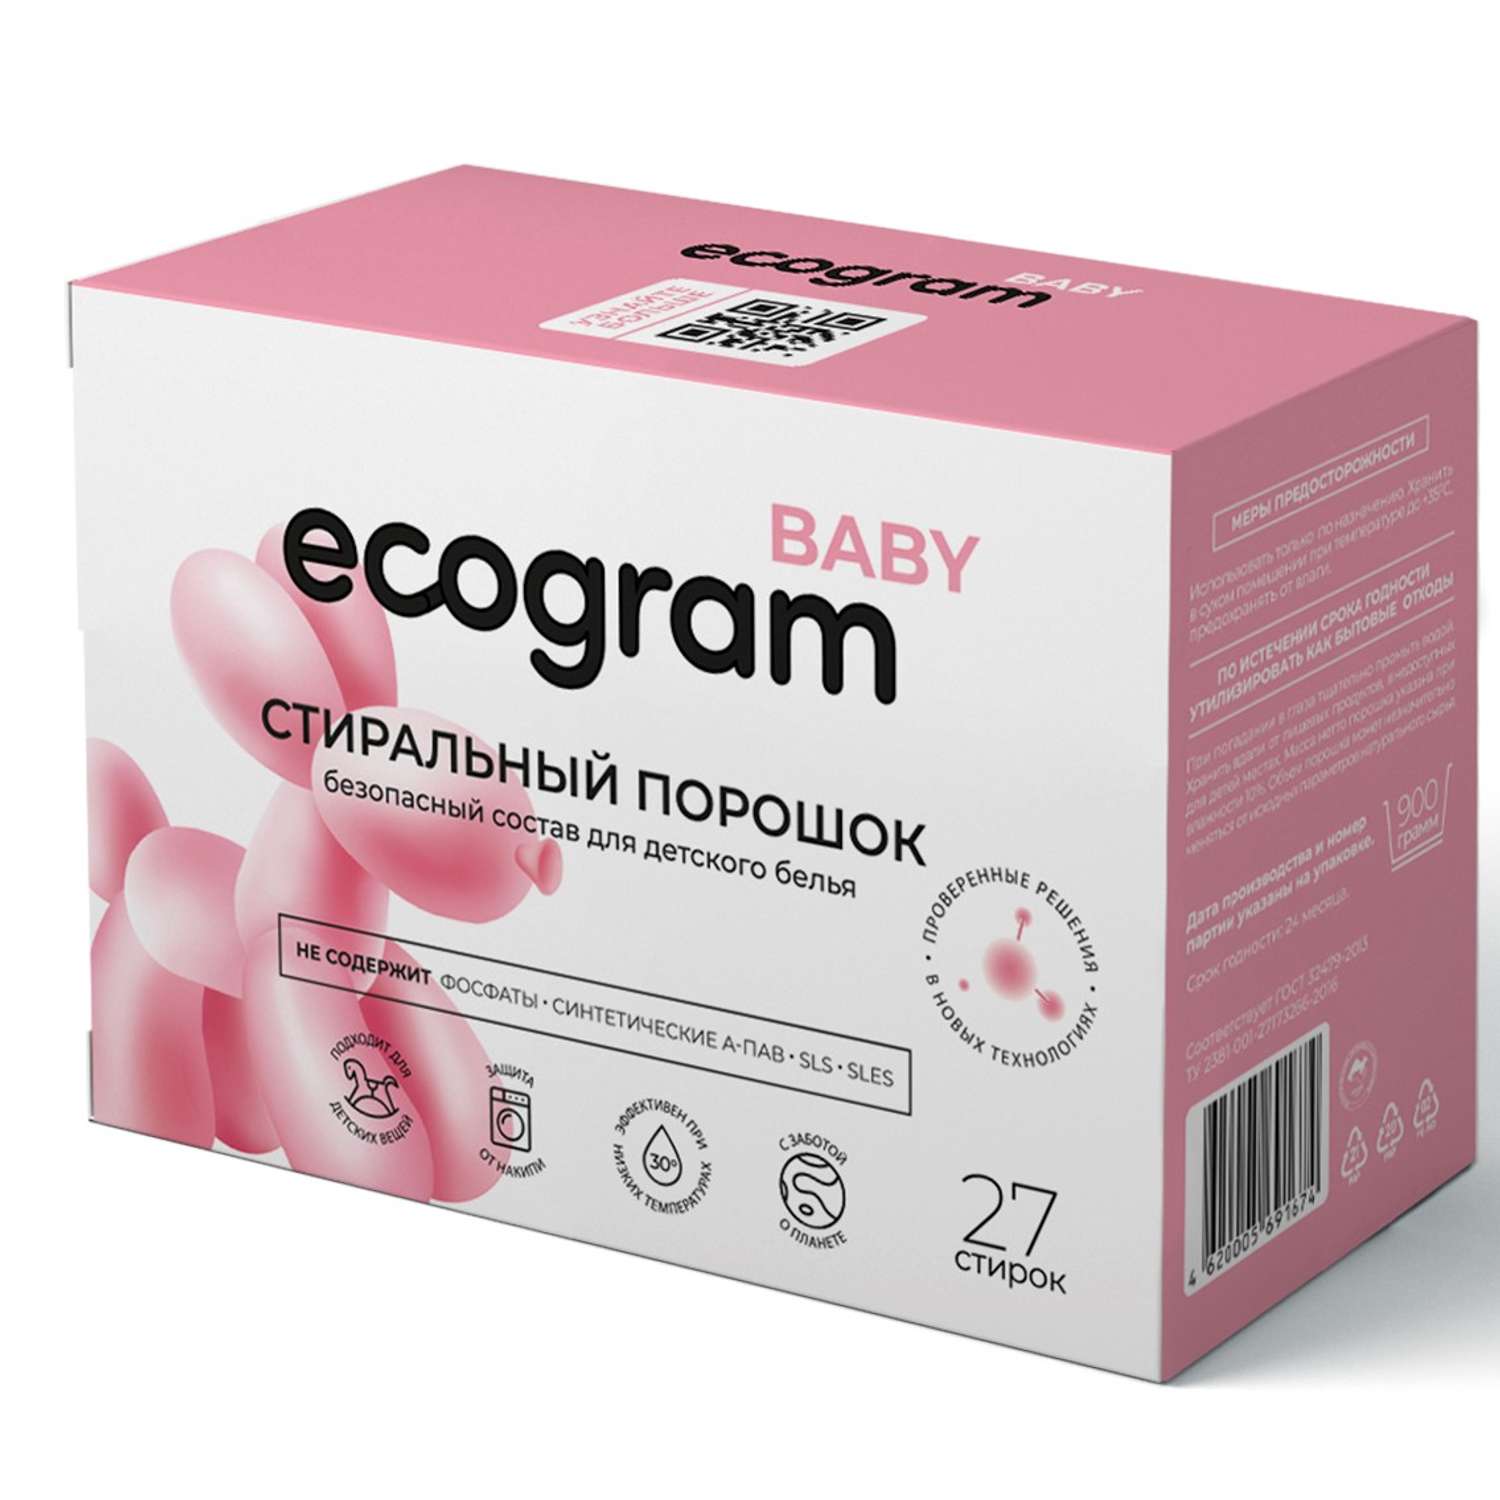 Стиральный порошок Ecogram Baby экологичный 900 г - фото 1